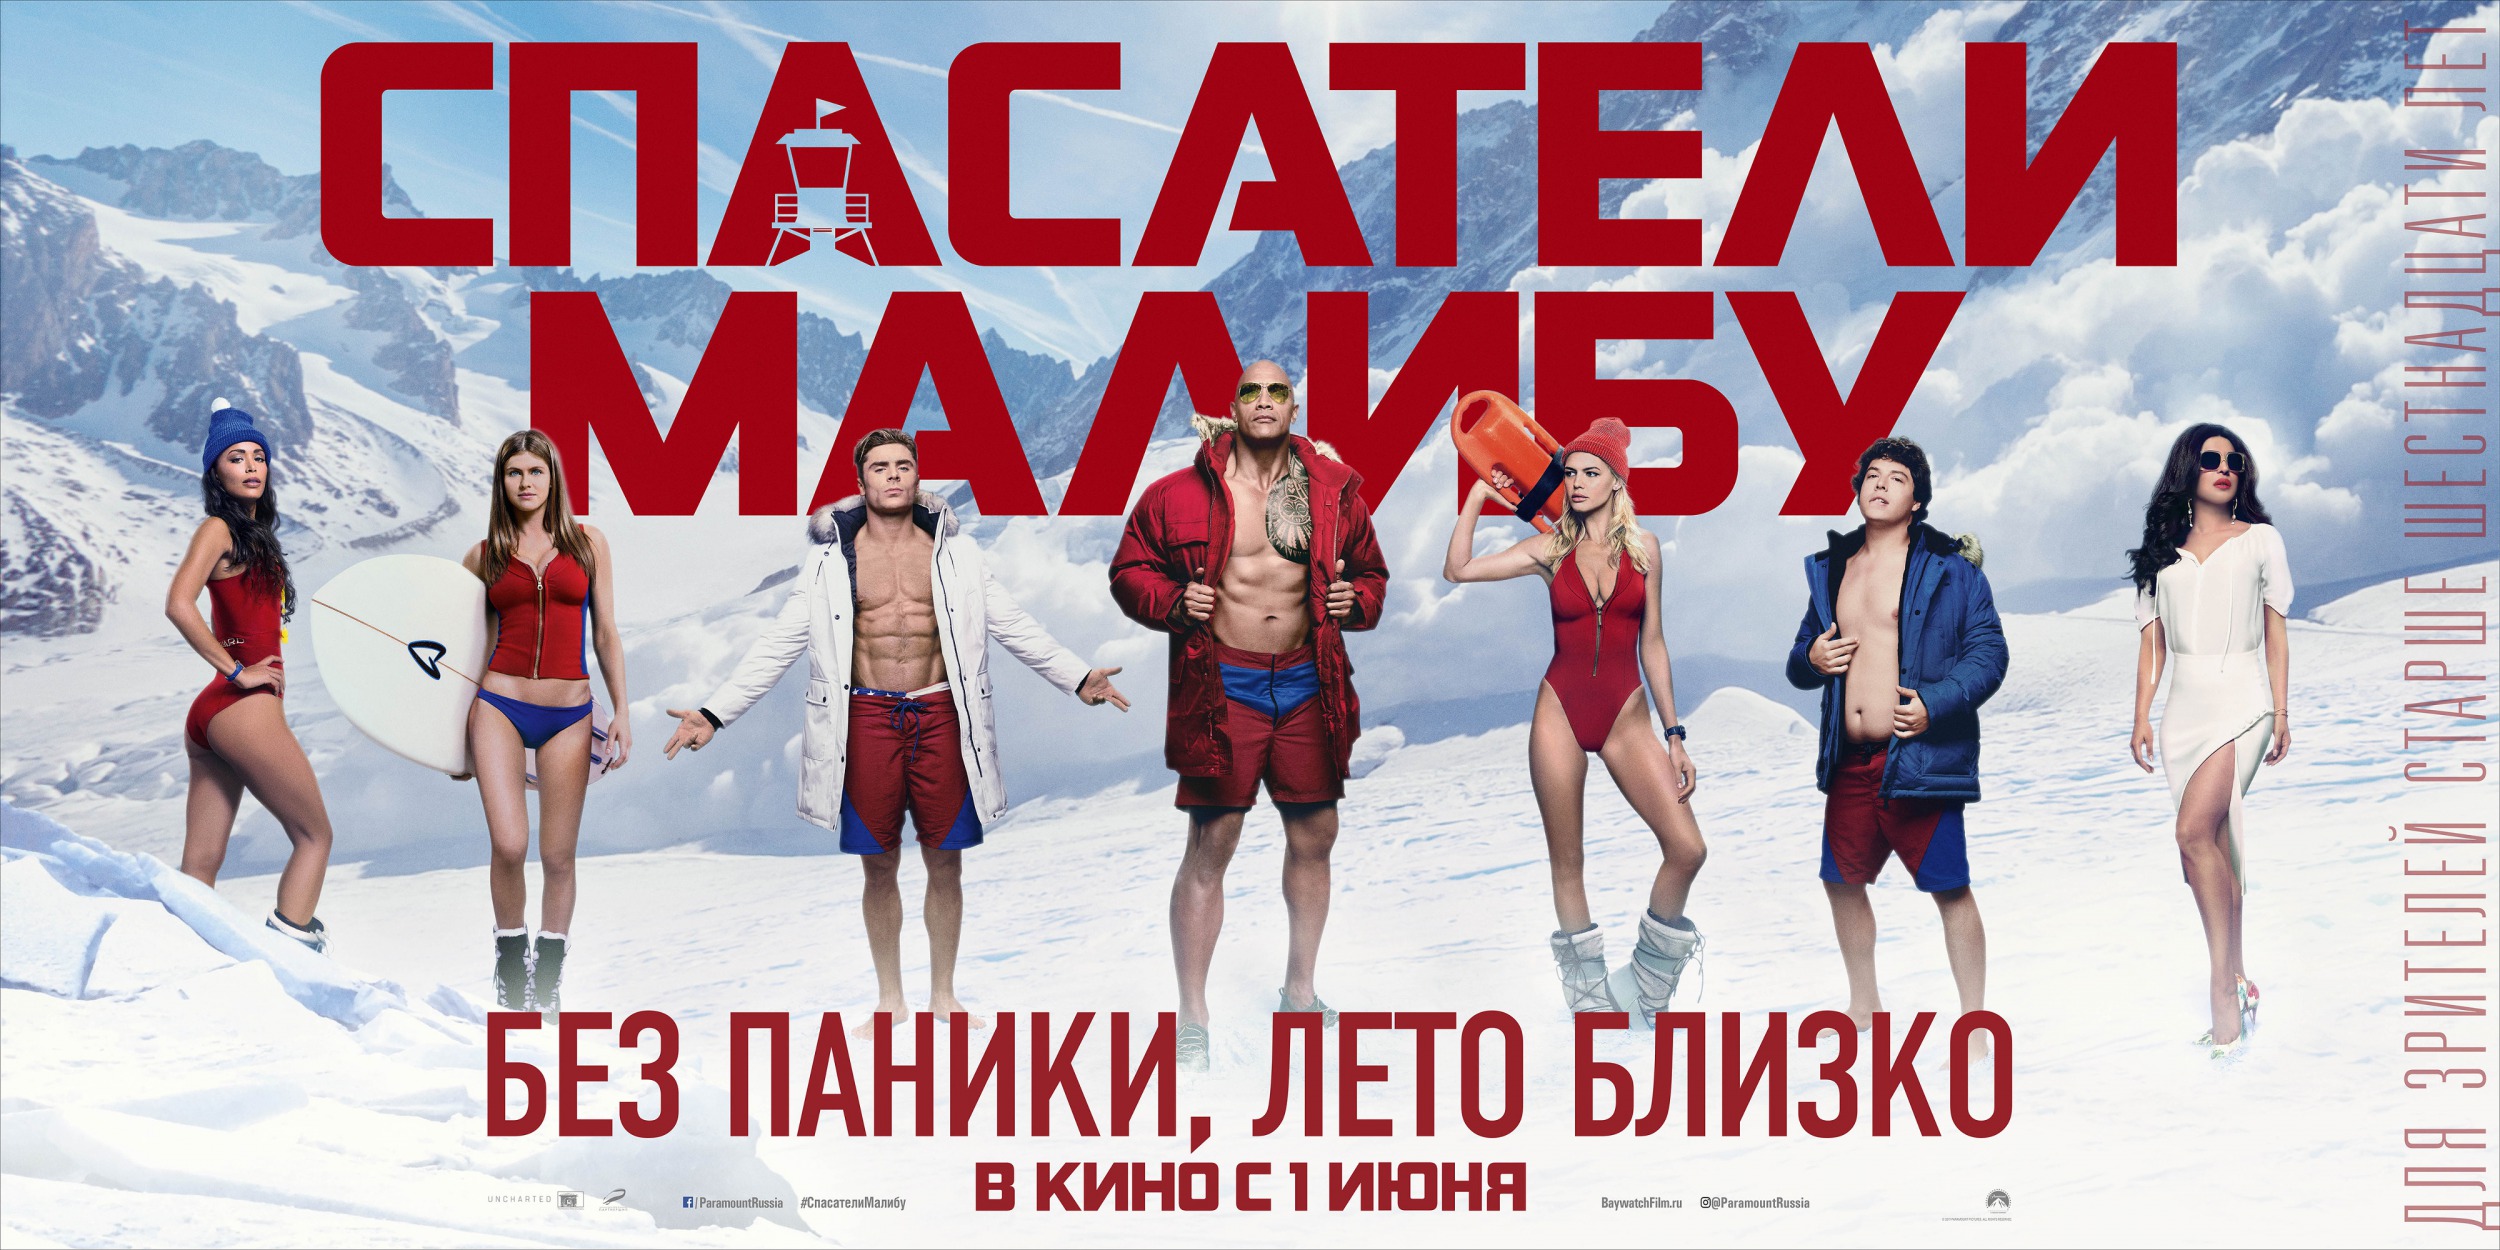 Русскоязычный баннер «Спасателей Малибу»